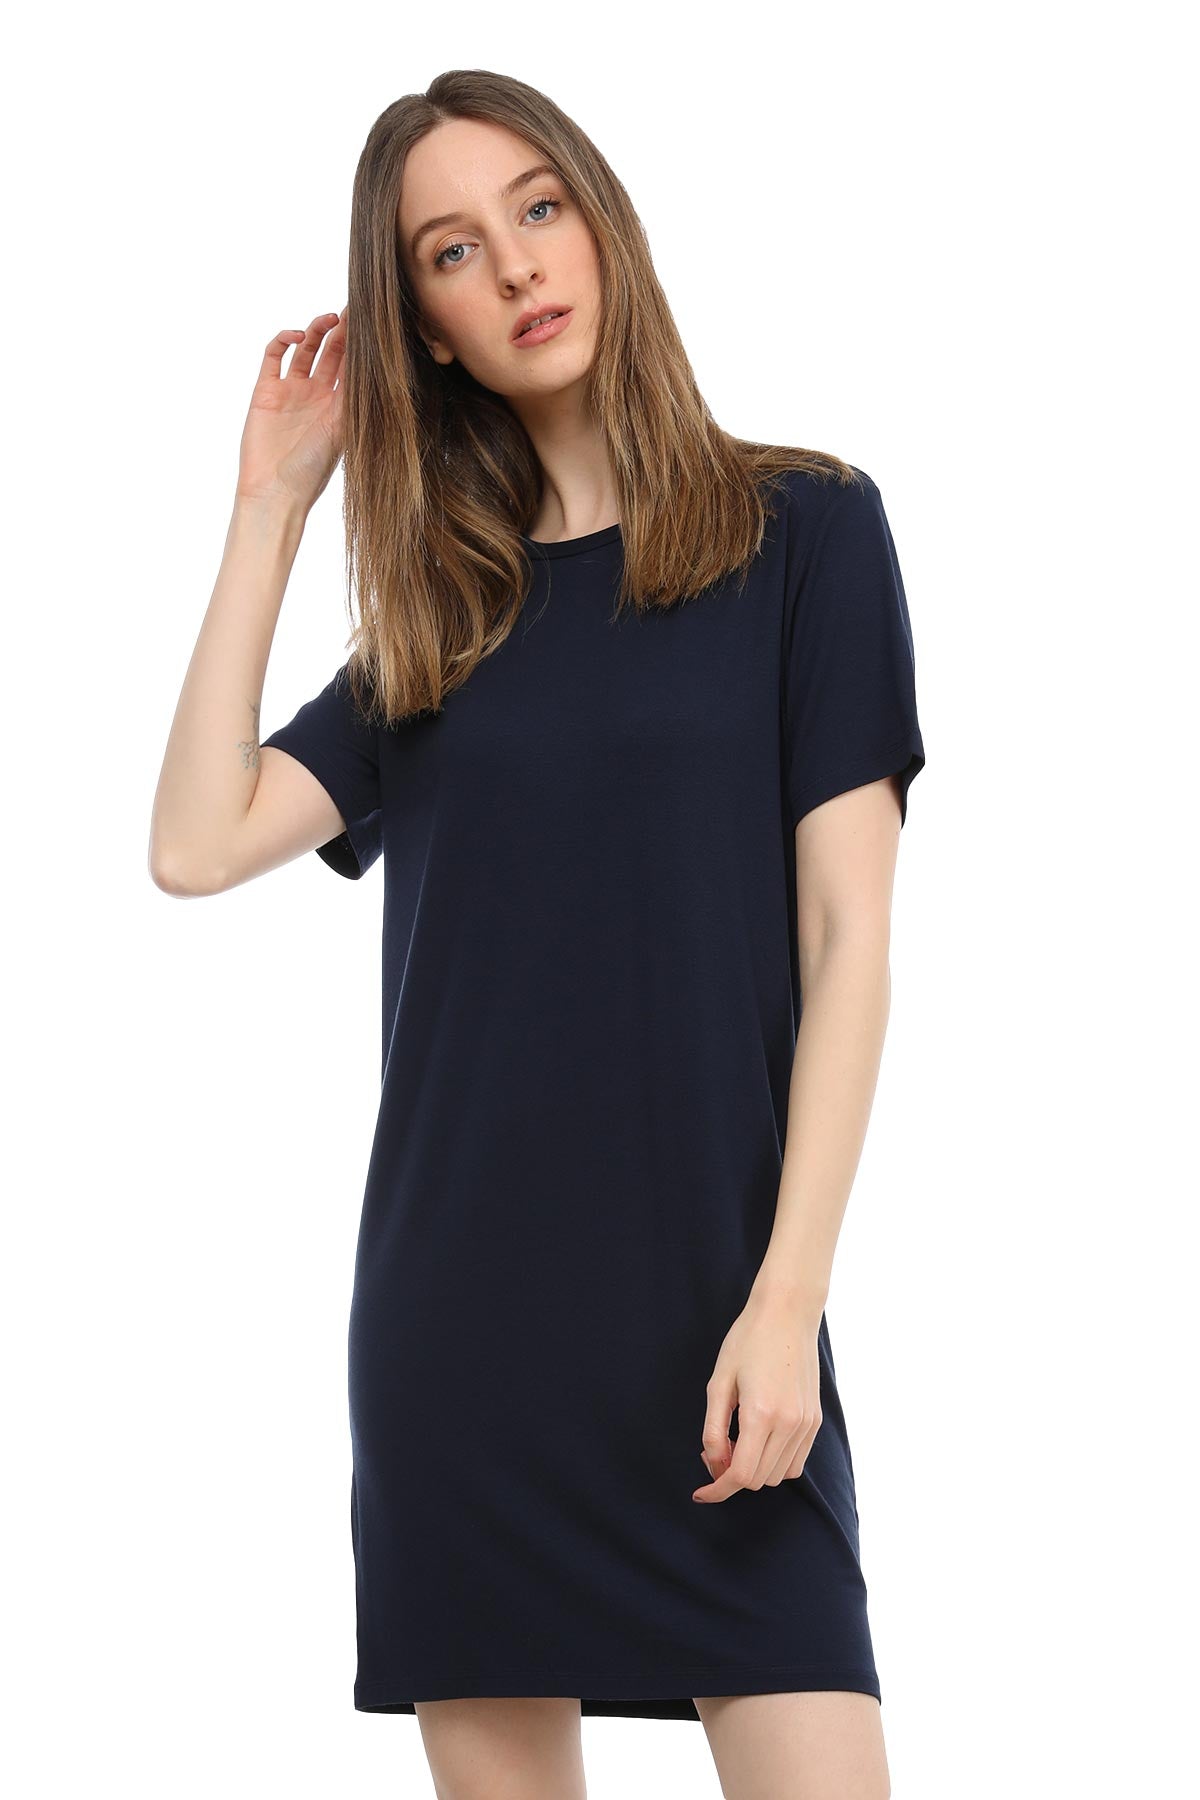 Tru T-shirt Elbise-Libas Trendy Fashion Store